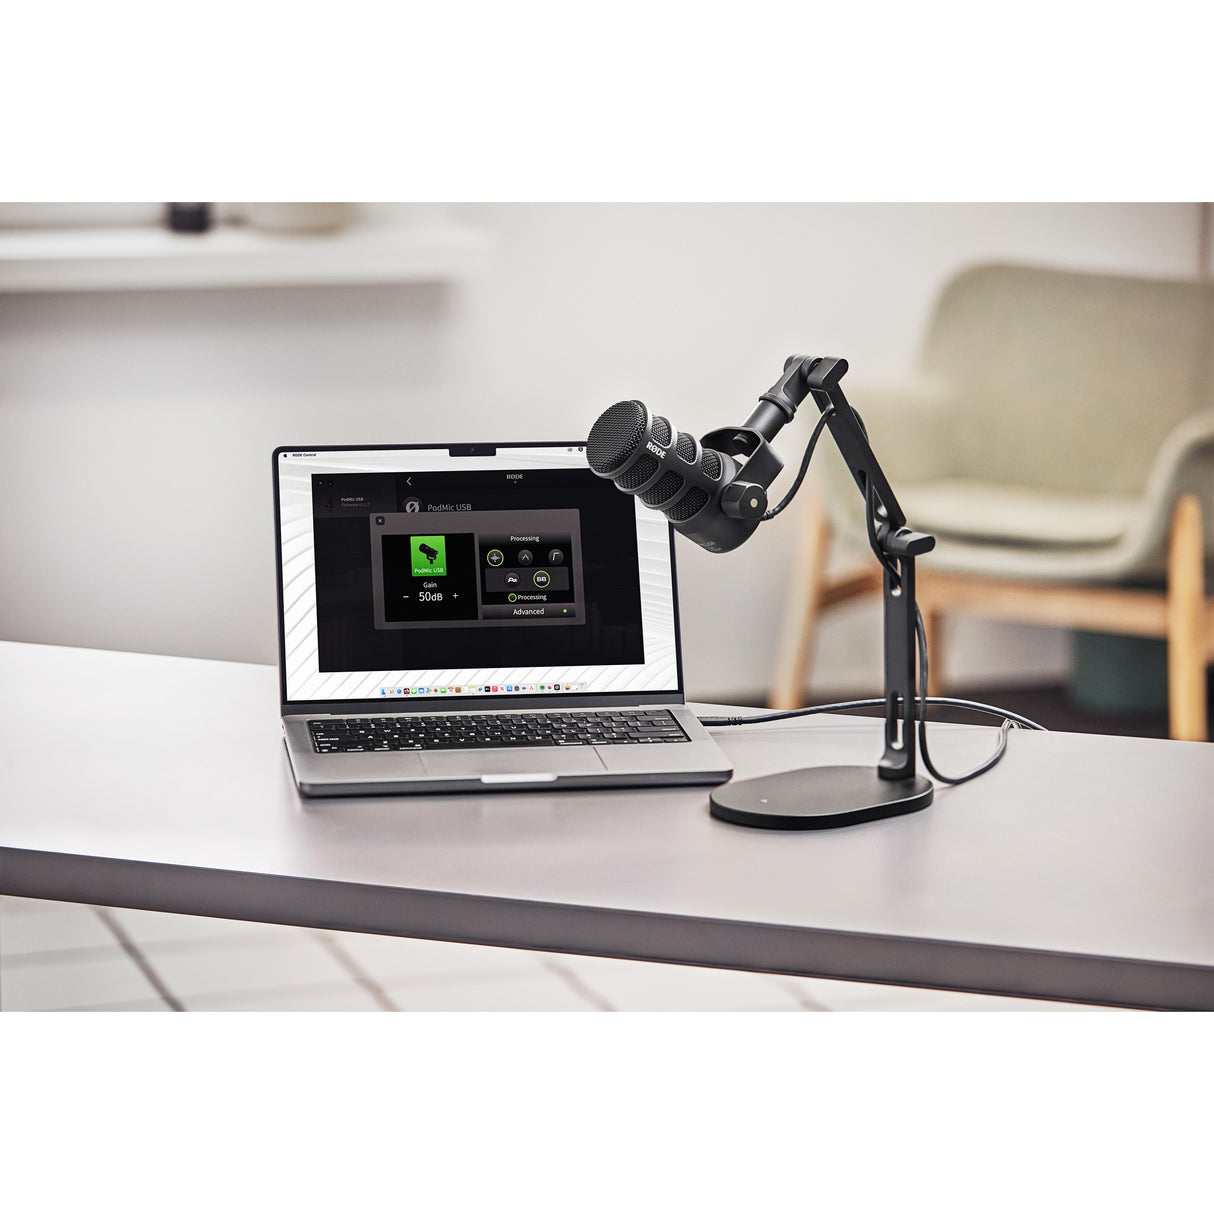 RODE DS2 Desktop Studio Arm for Microphones, Cameras, Smartphones, and Lights